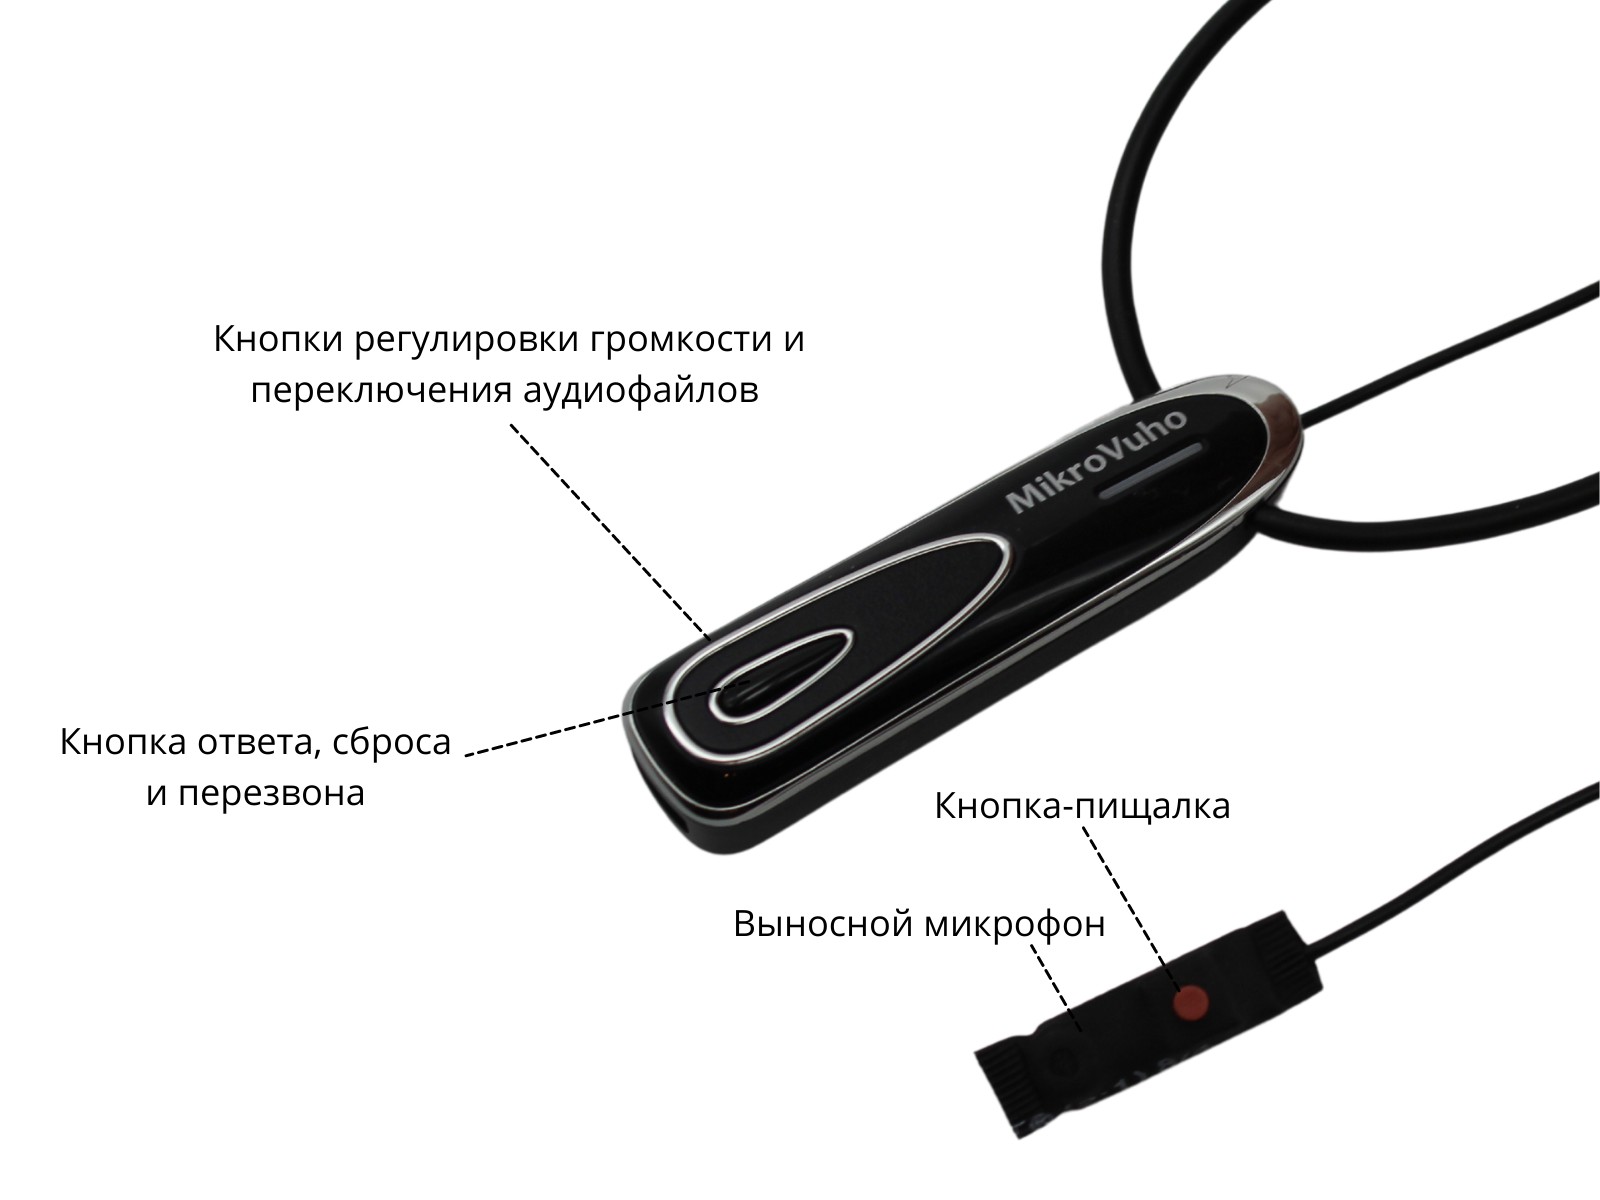 Универсальная гарнитура Bluetooth Premier с капсулой Premium и магнитами 2 мм 4